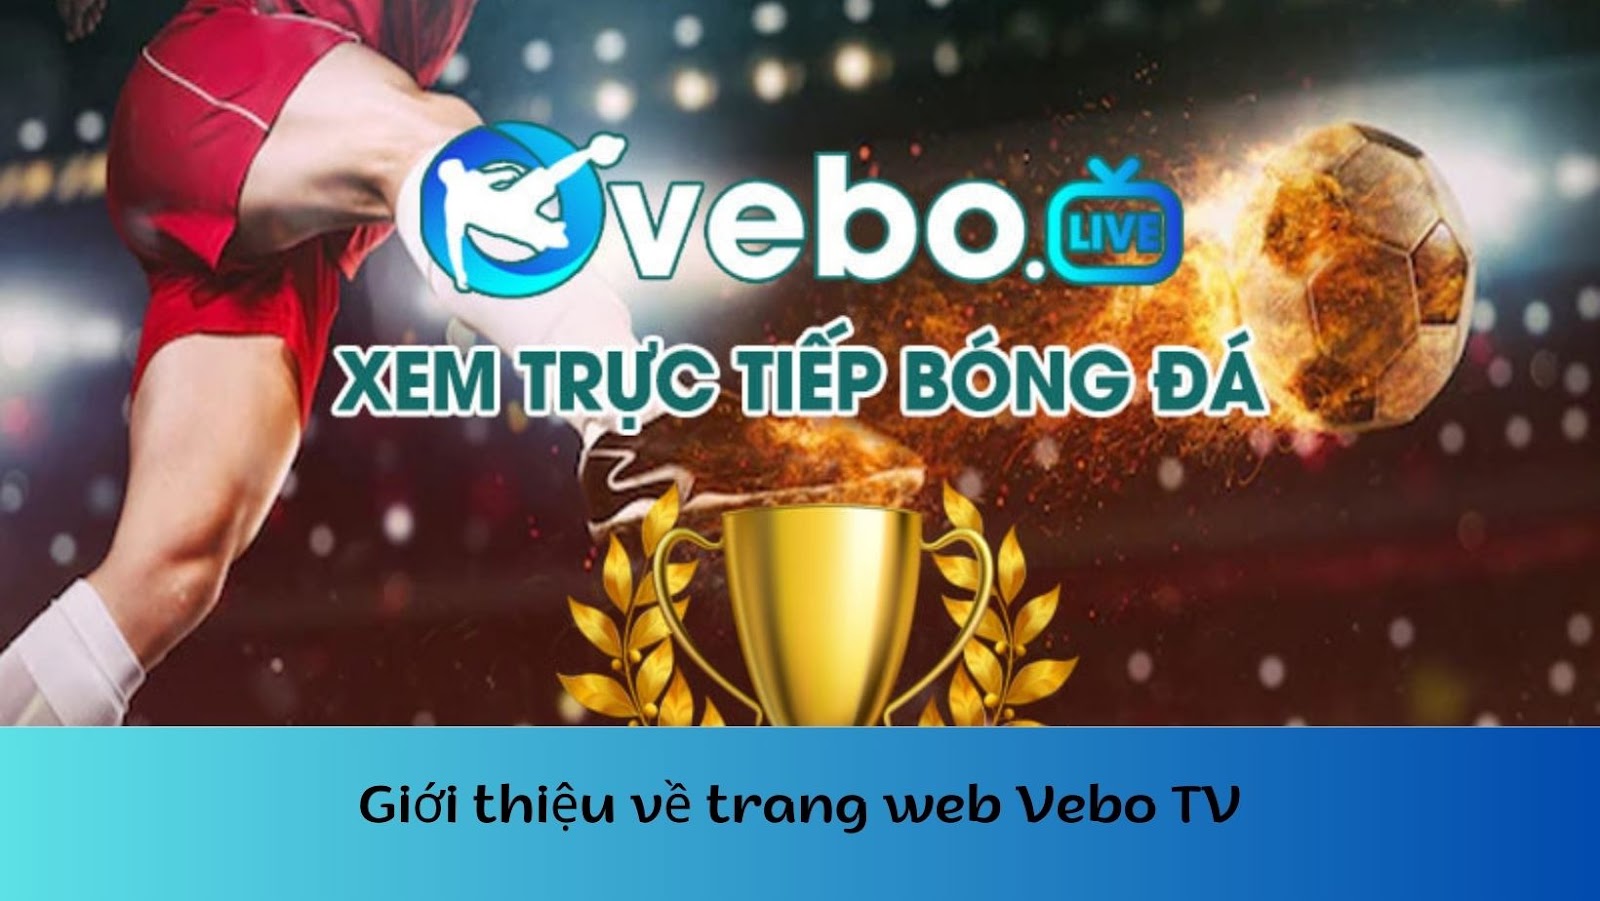 Trang web Vebo TV - Xem live bóng đá hấp dẫn miễn phí tại nhà